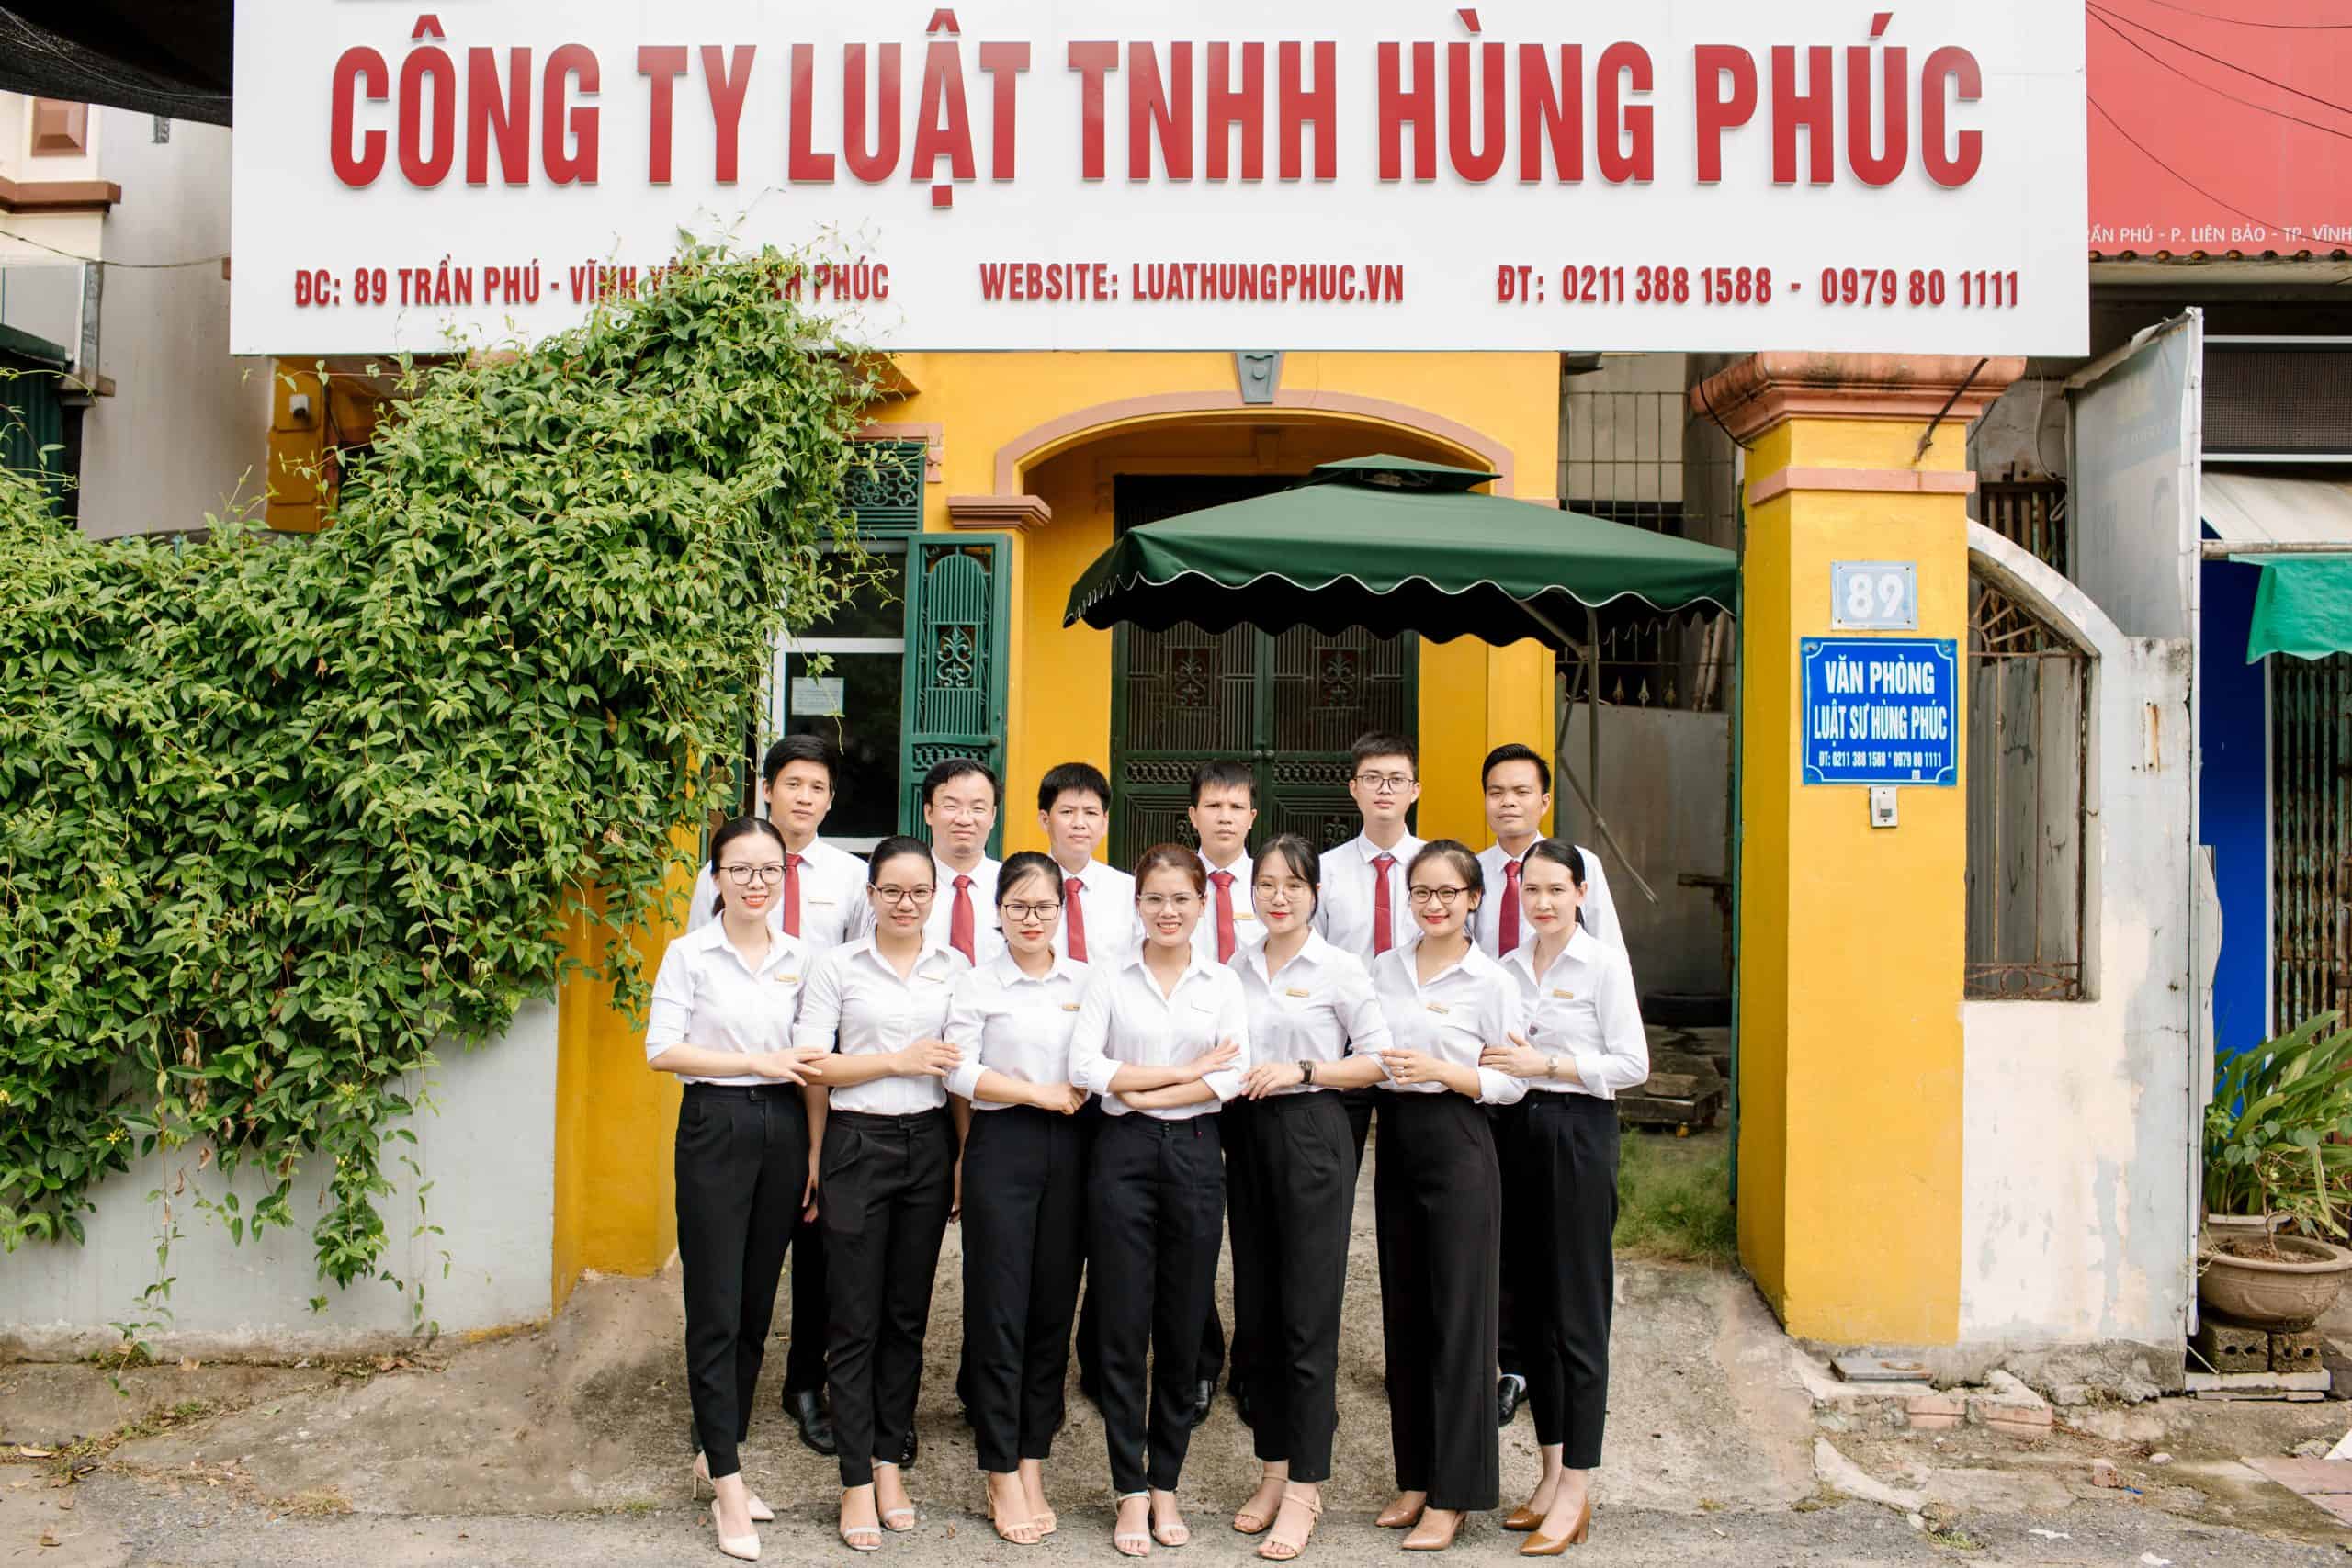 Hung Phuc